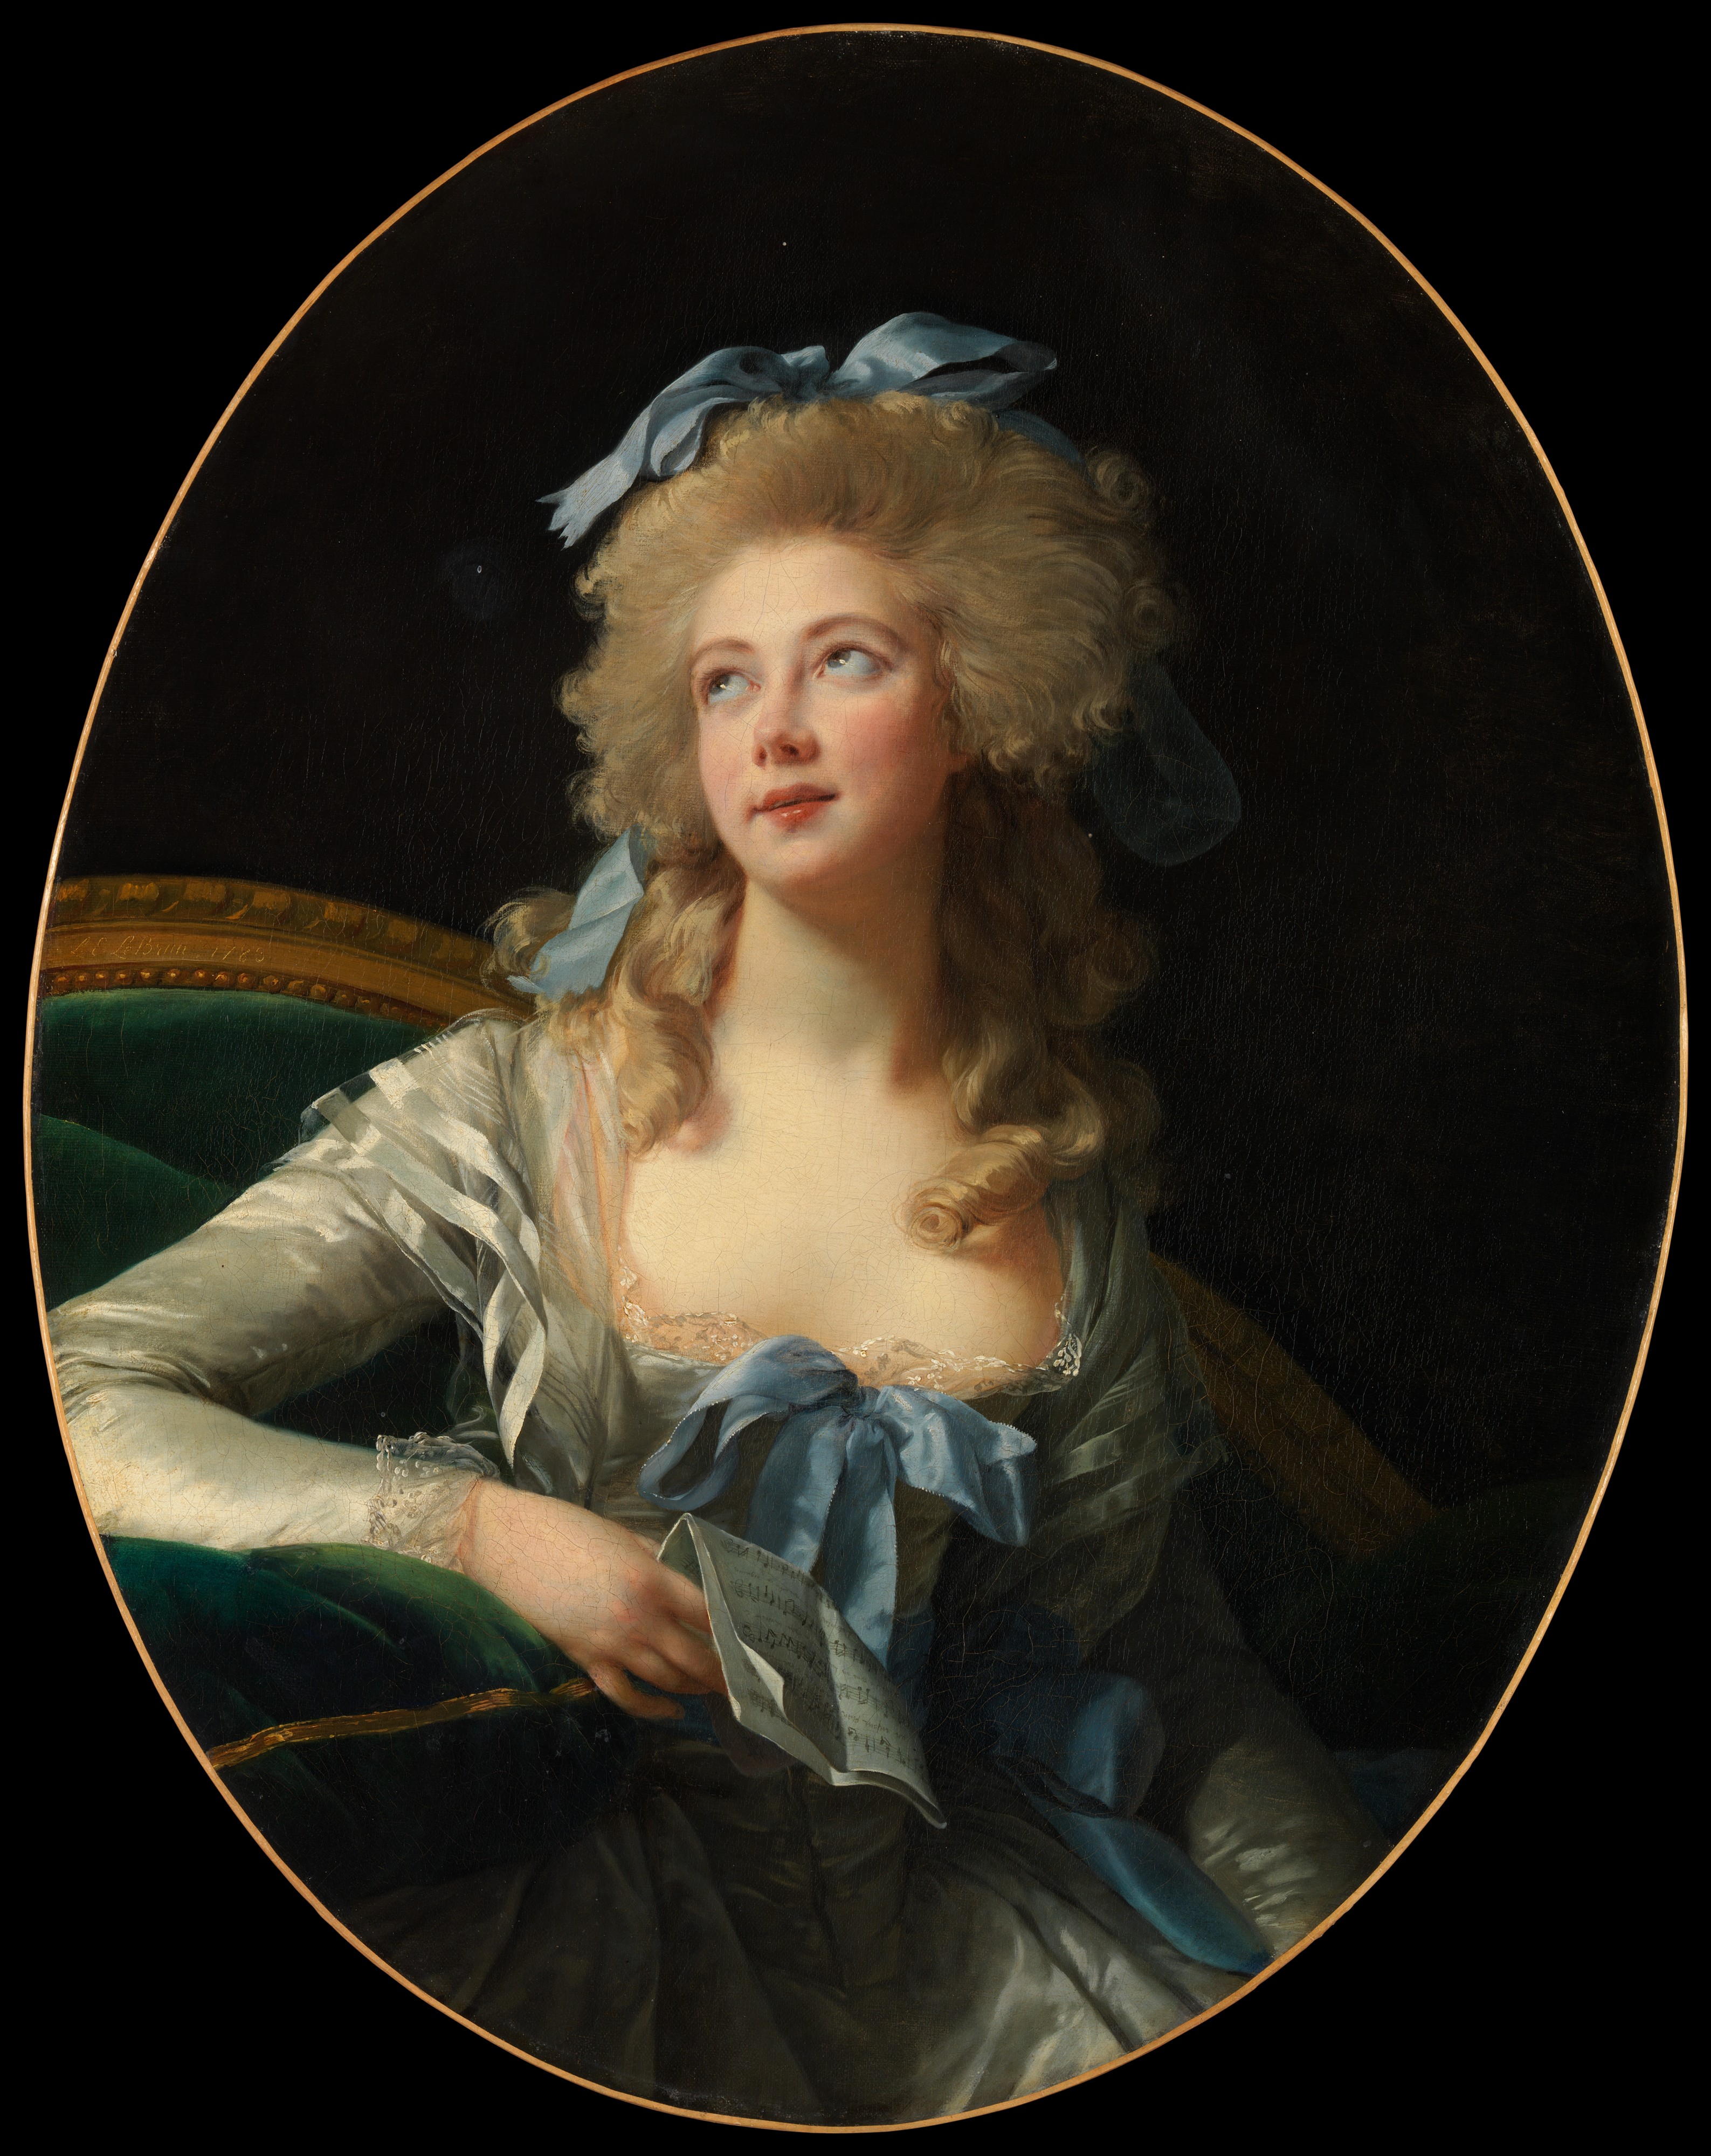 格兰德夫人（Noël Catherine Vorlée） by 伊丽莎白· 维吉·勒·布伦 - 1783 - 92.1 x 72.4 cm 